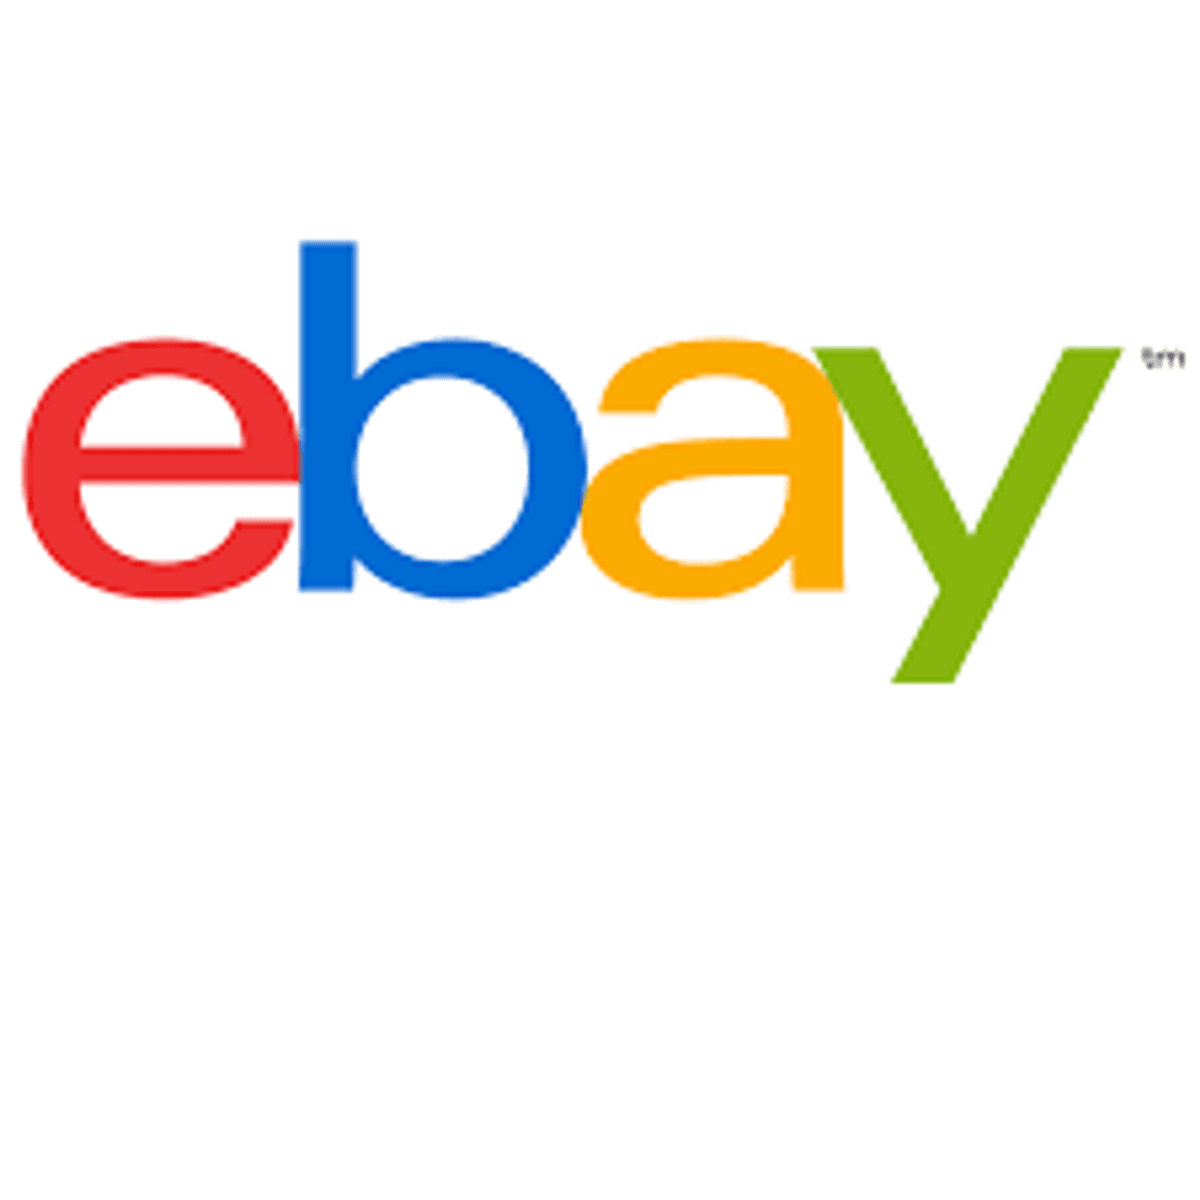 eBay verwacht hogere omzet door coronacrisis image